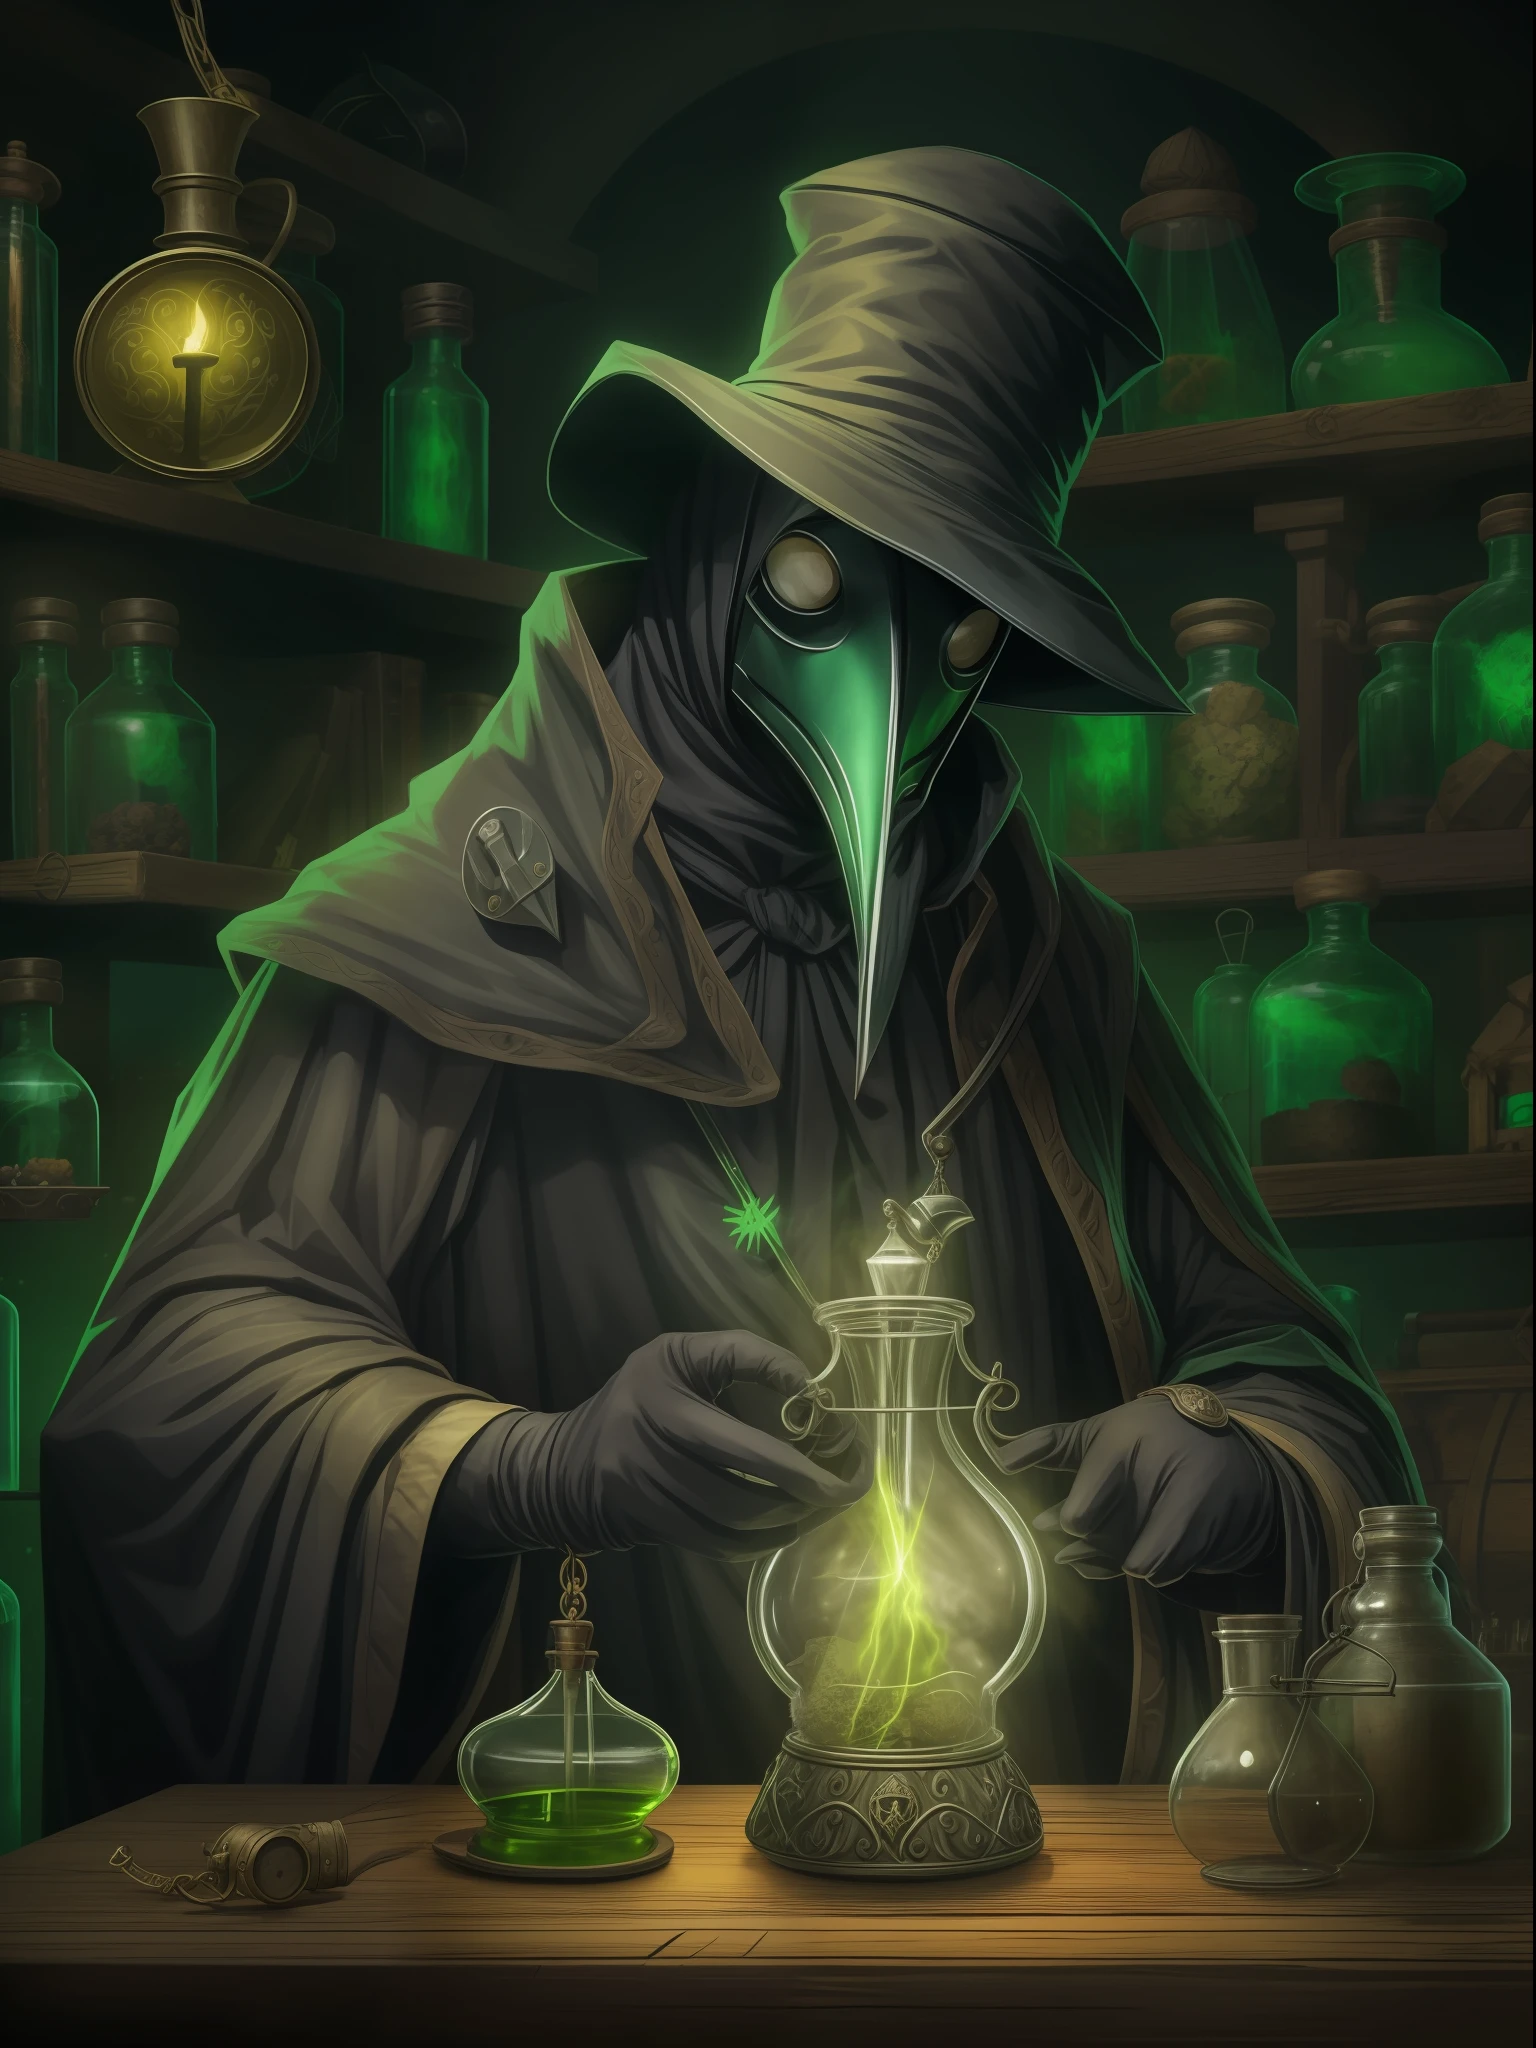 "Un médico de la peste con una máscara oscura y un traje antiguo, Sosteniendo una poción misteriosa en sus manos enguantadas, en un laboratorio oscuro y enigmático. Al fondo, un aura siniestra de color verde brillante y venenoso, Emanando rayos de luz. A tu lado, Un pequeño ratón verde mascota, observando curiosamente."